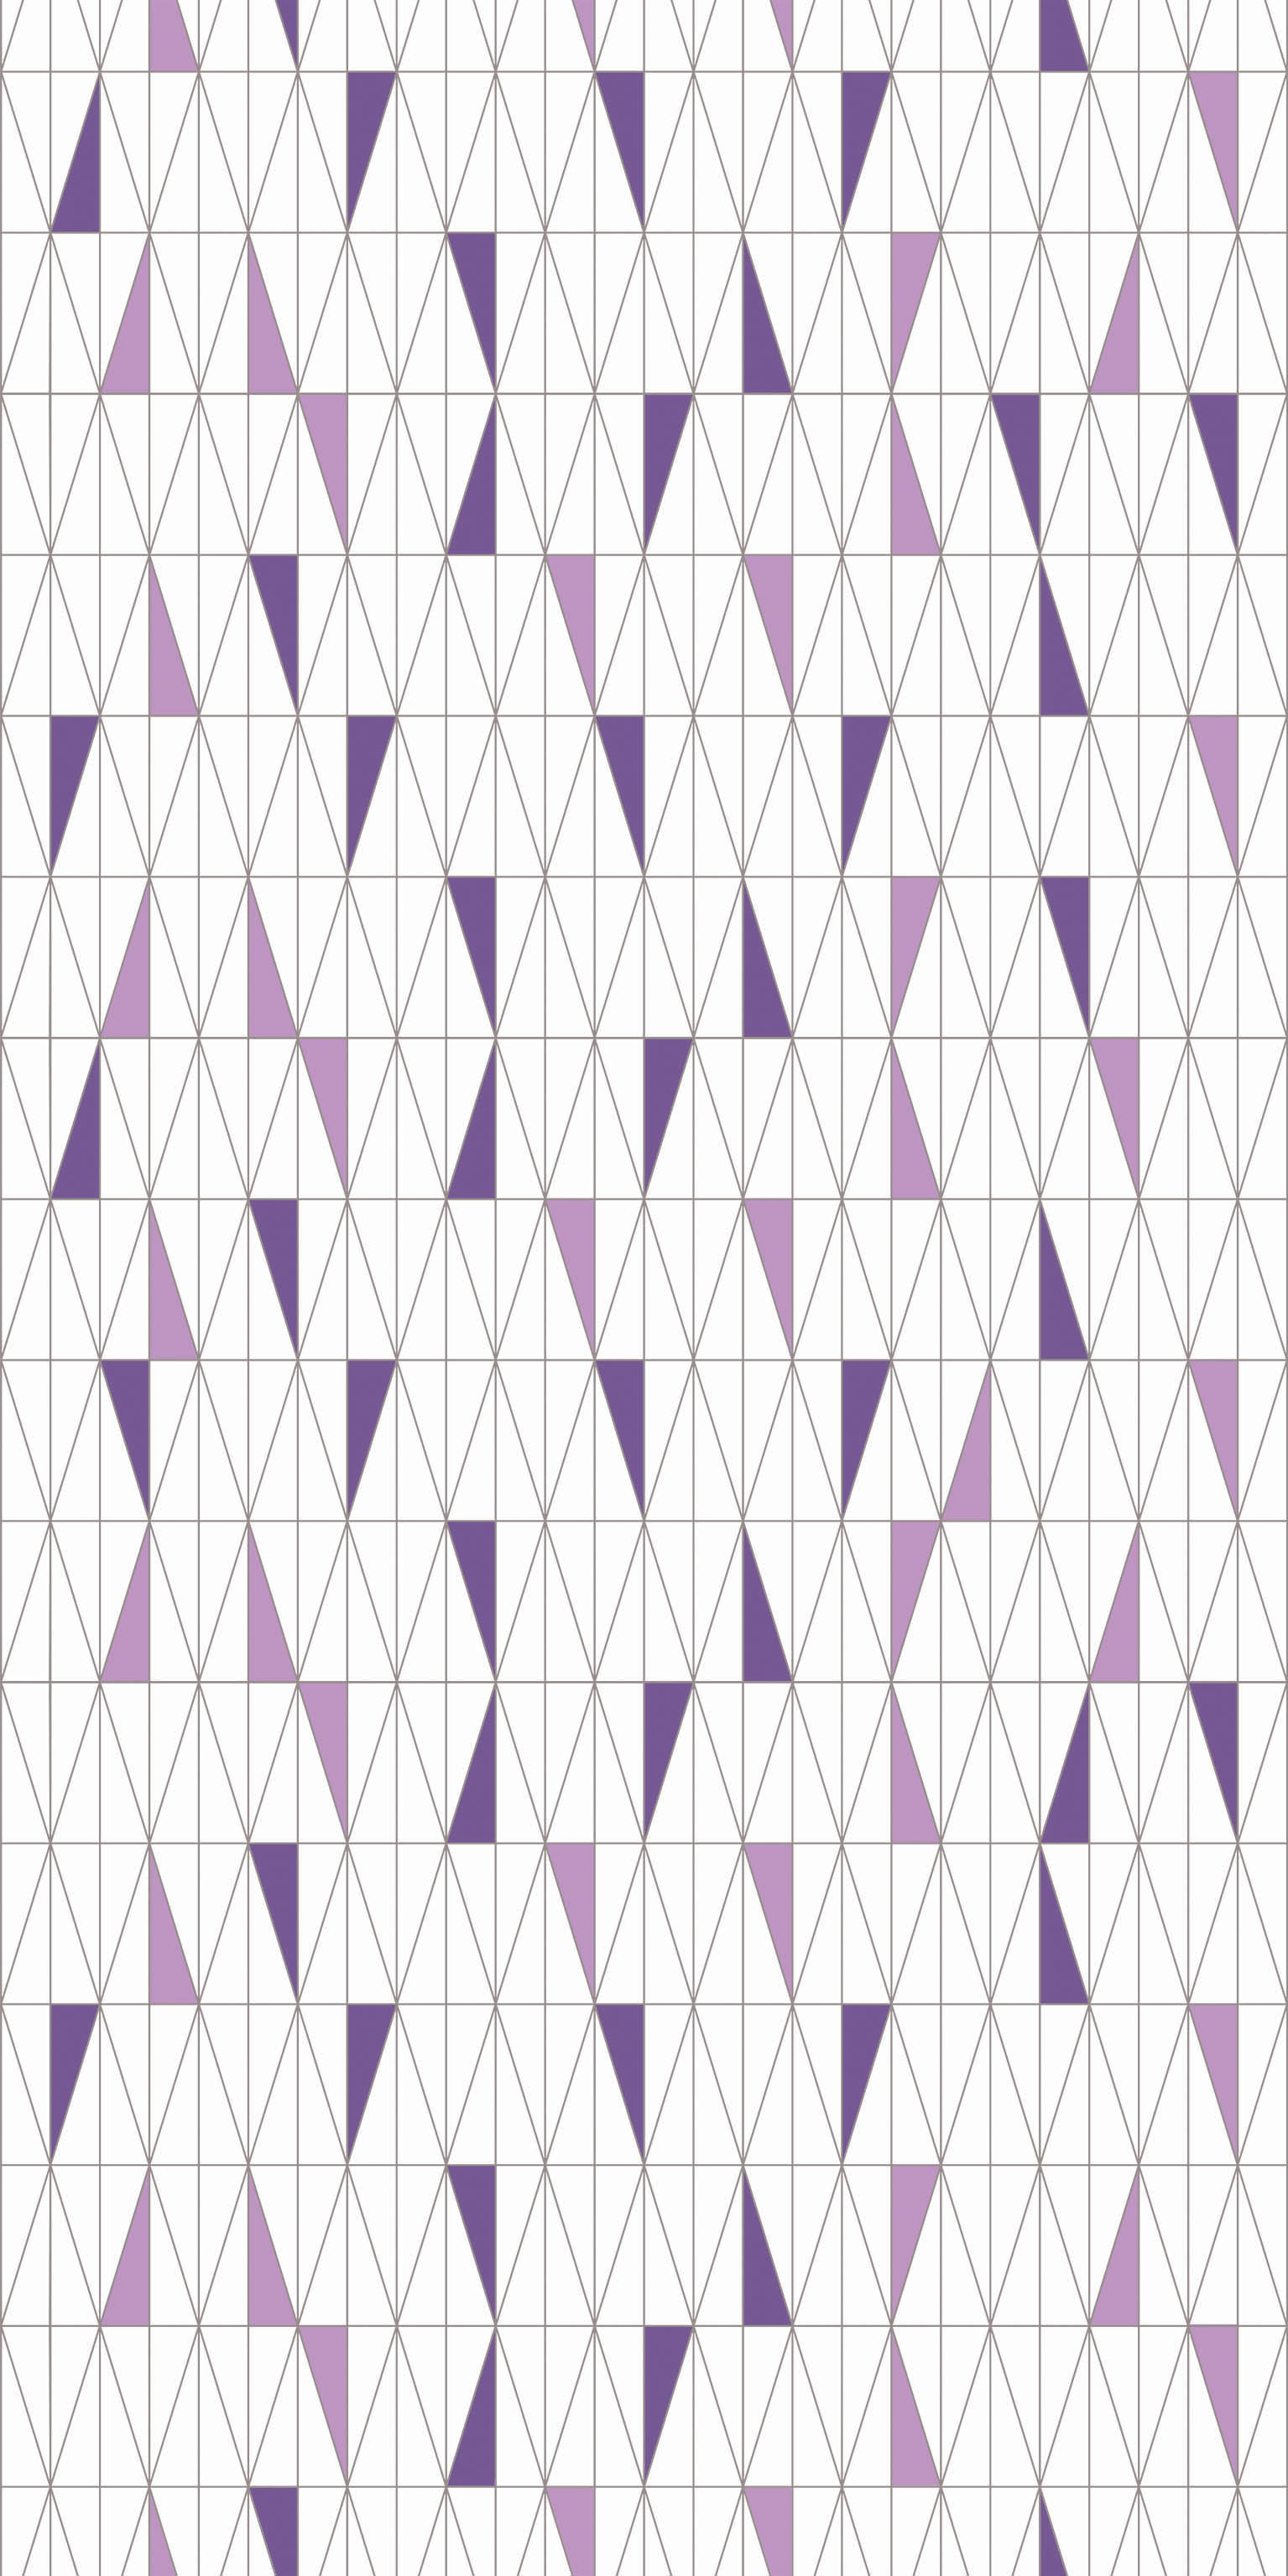 Пленка для термопереноса 340-3 треугольники фиолет из коллекции Freedom